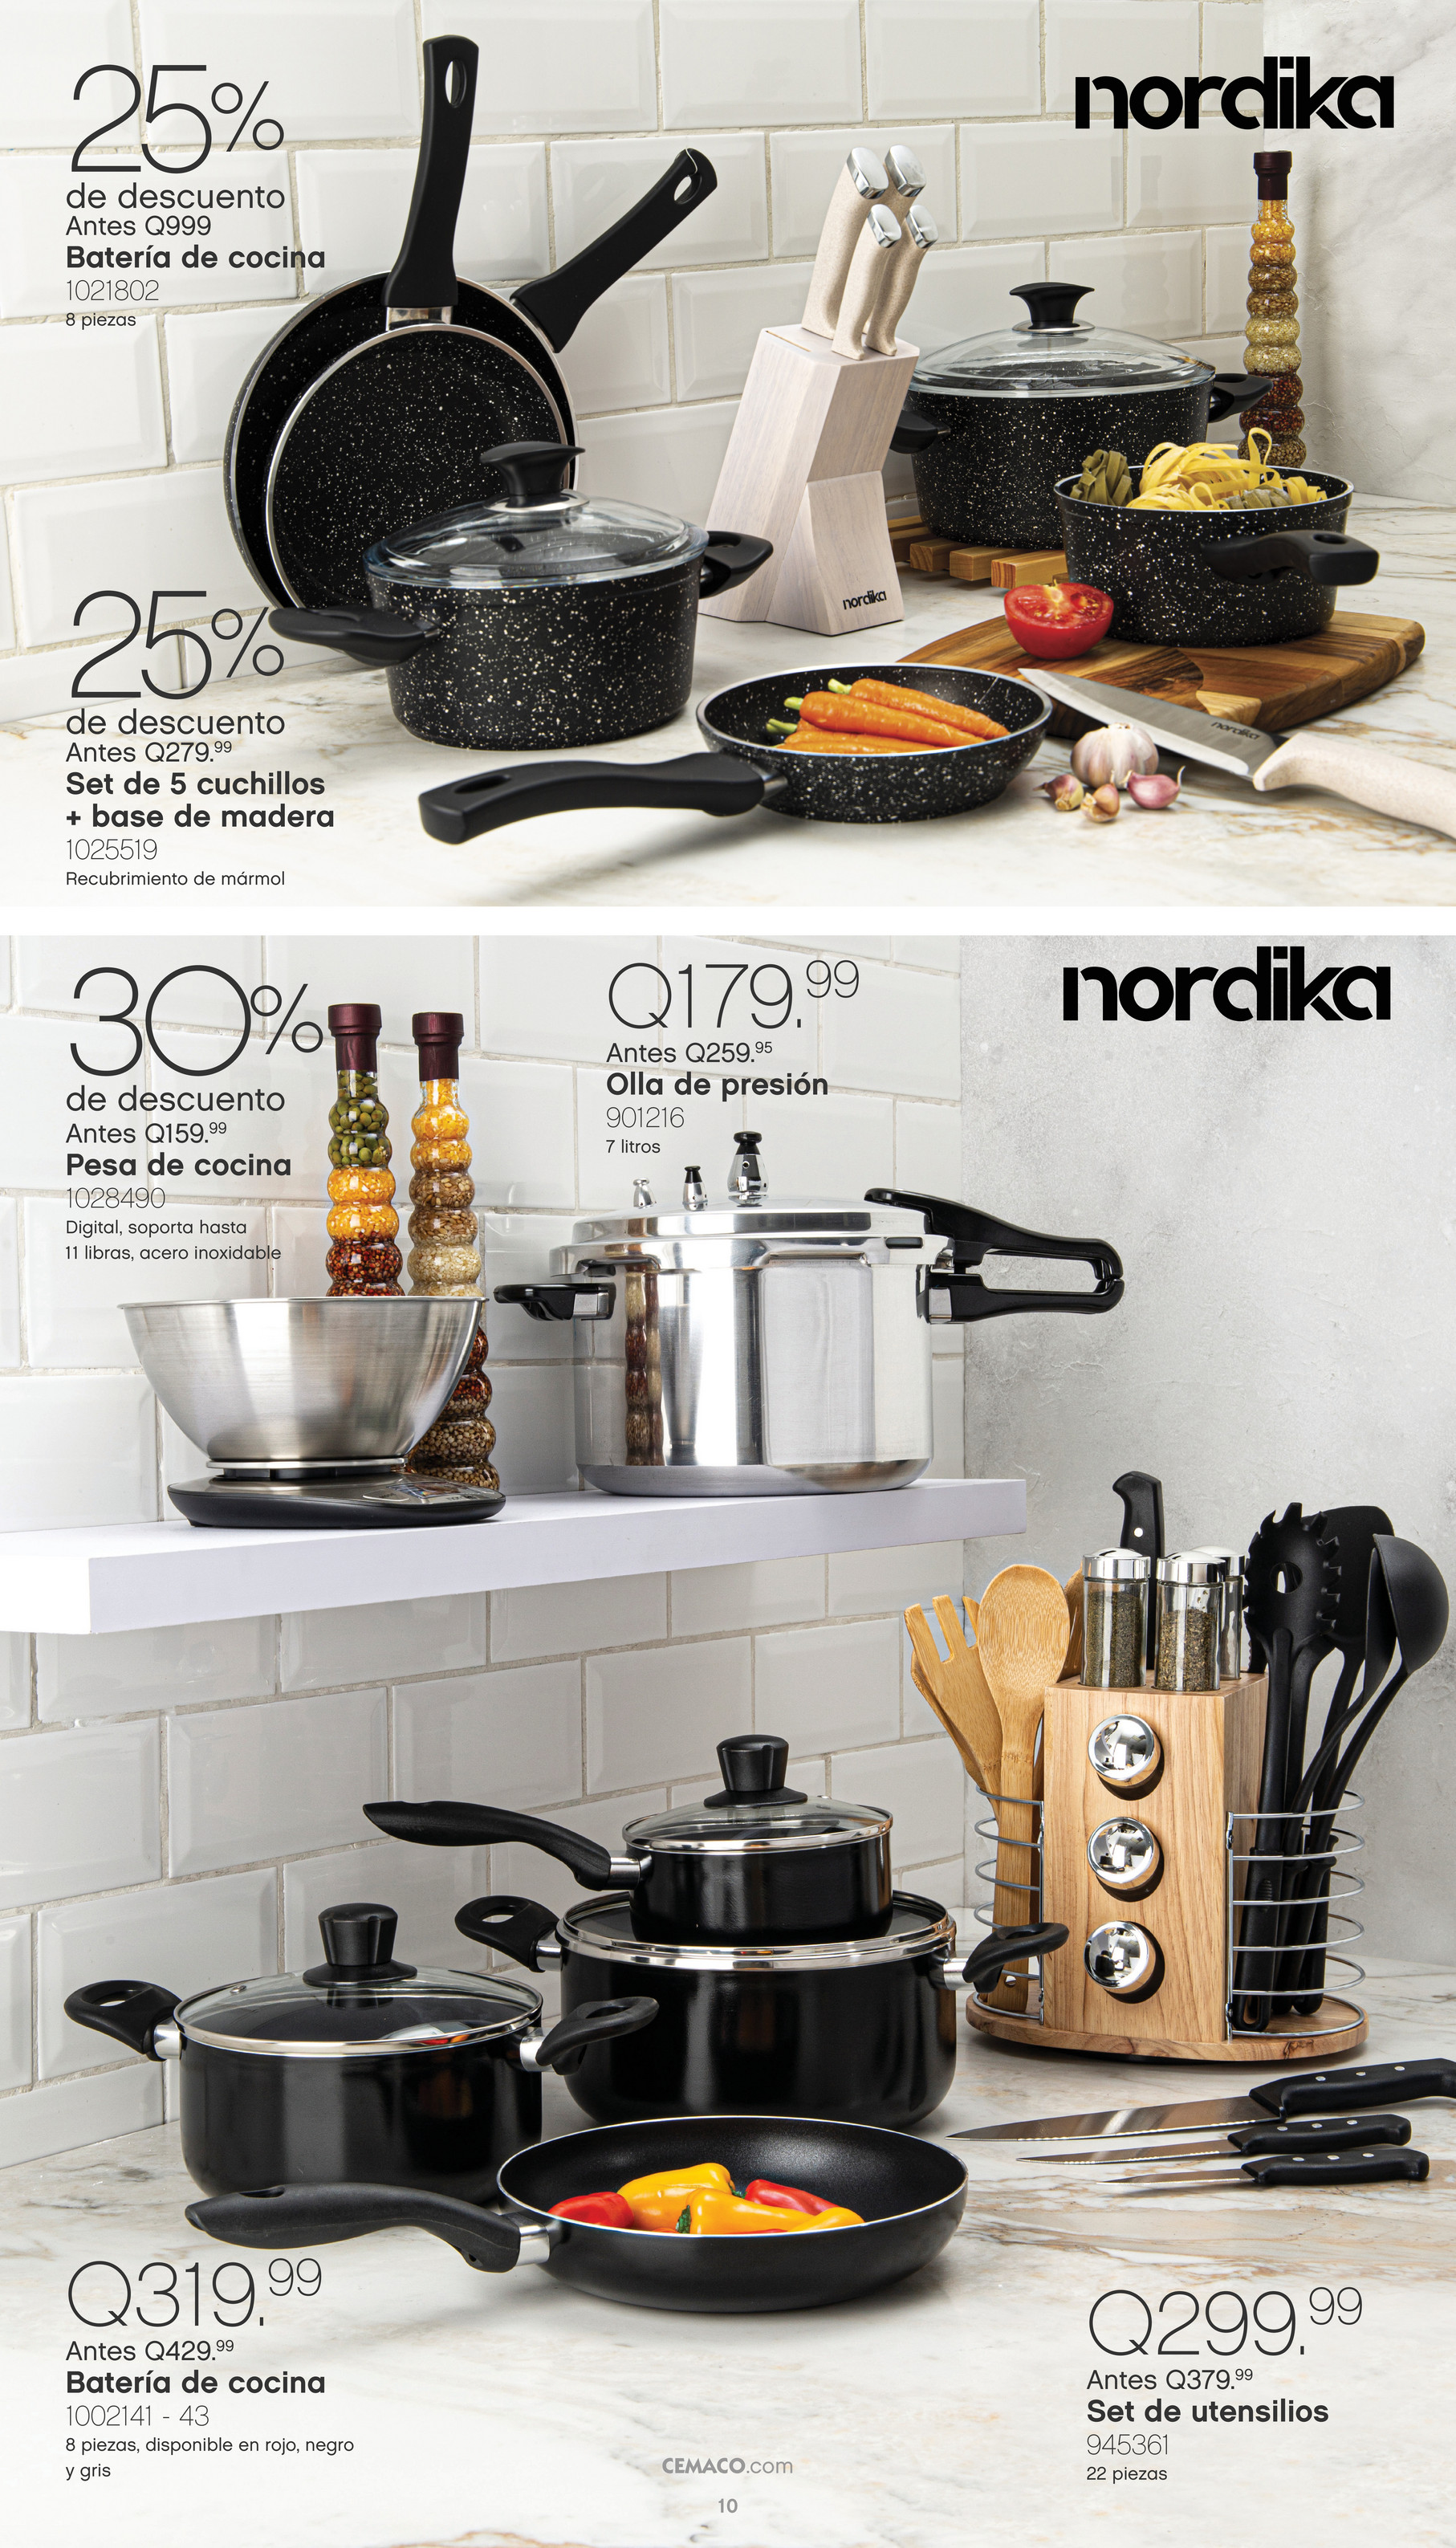 Set De Utensilios Y Accesorios Para Cocina 22 Pzas - Nordika - Cemaco